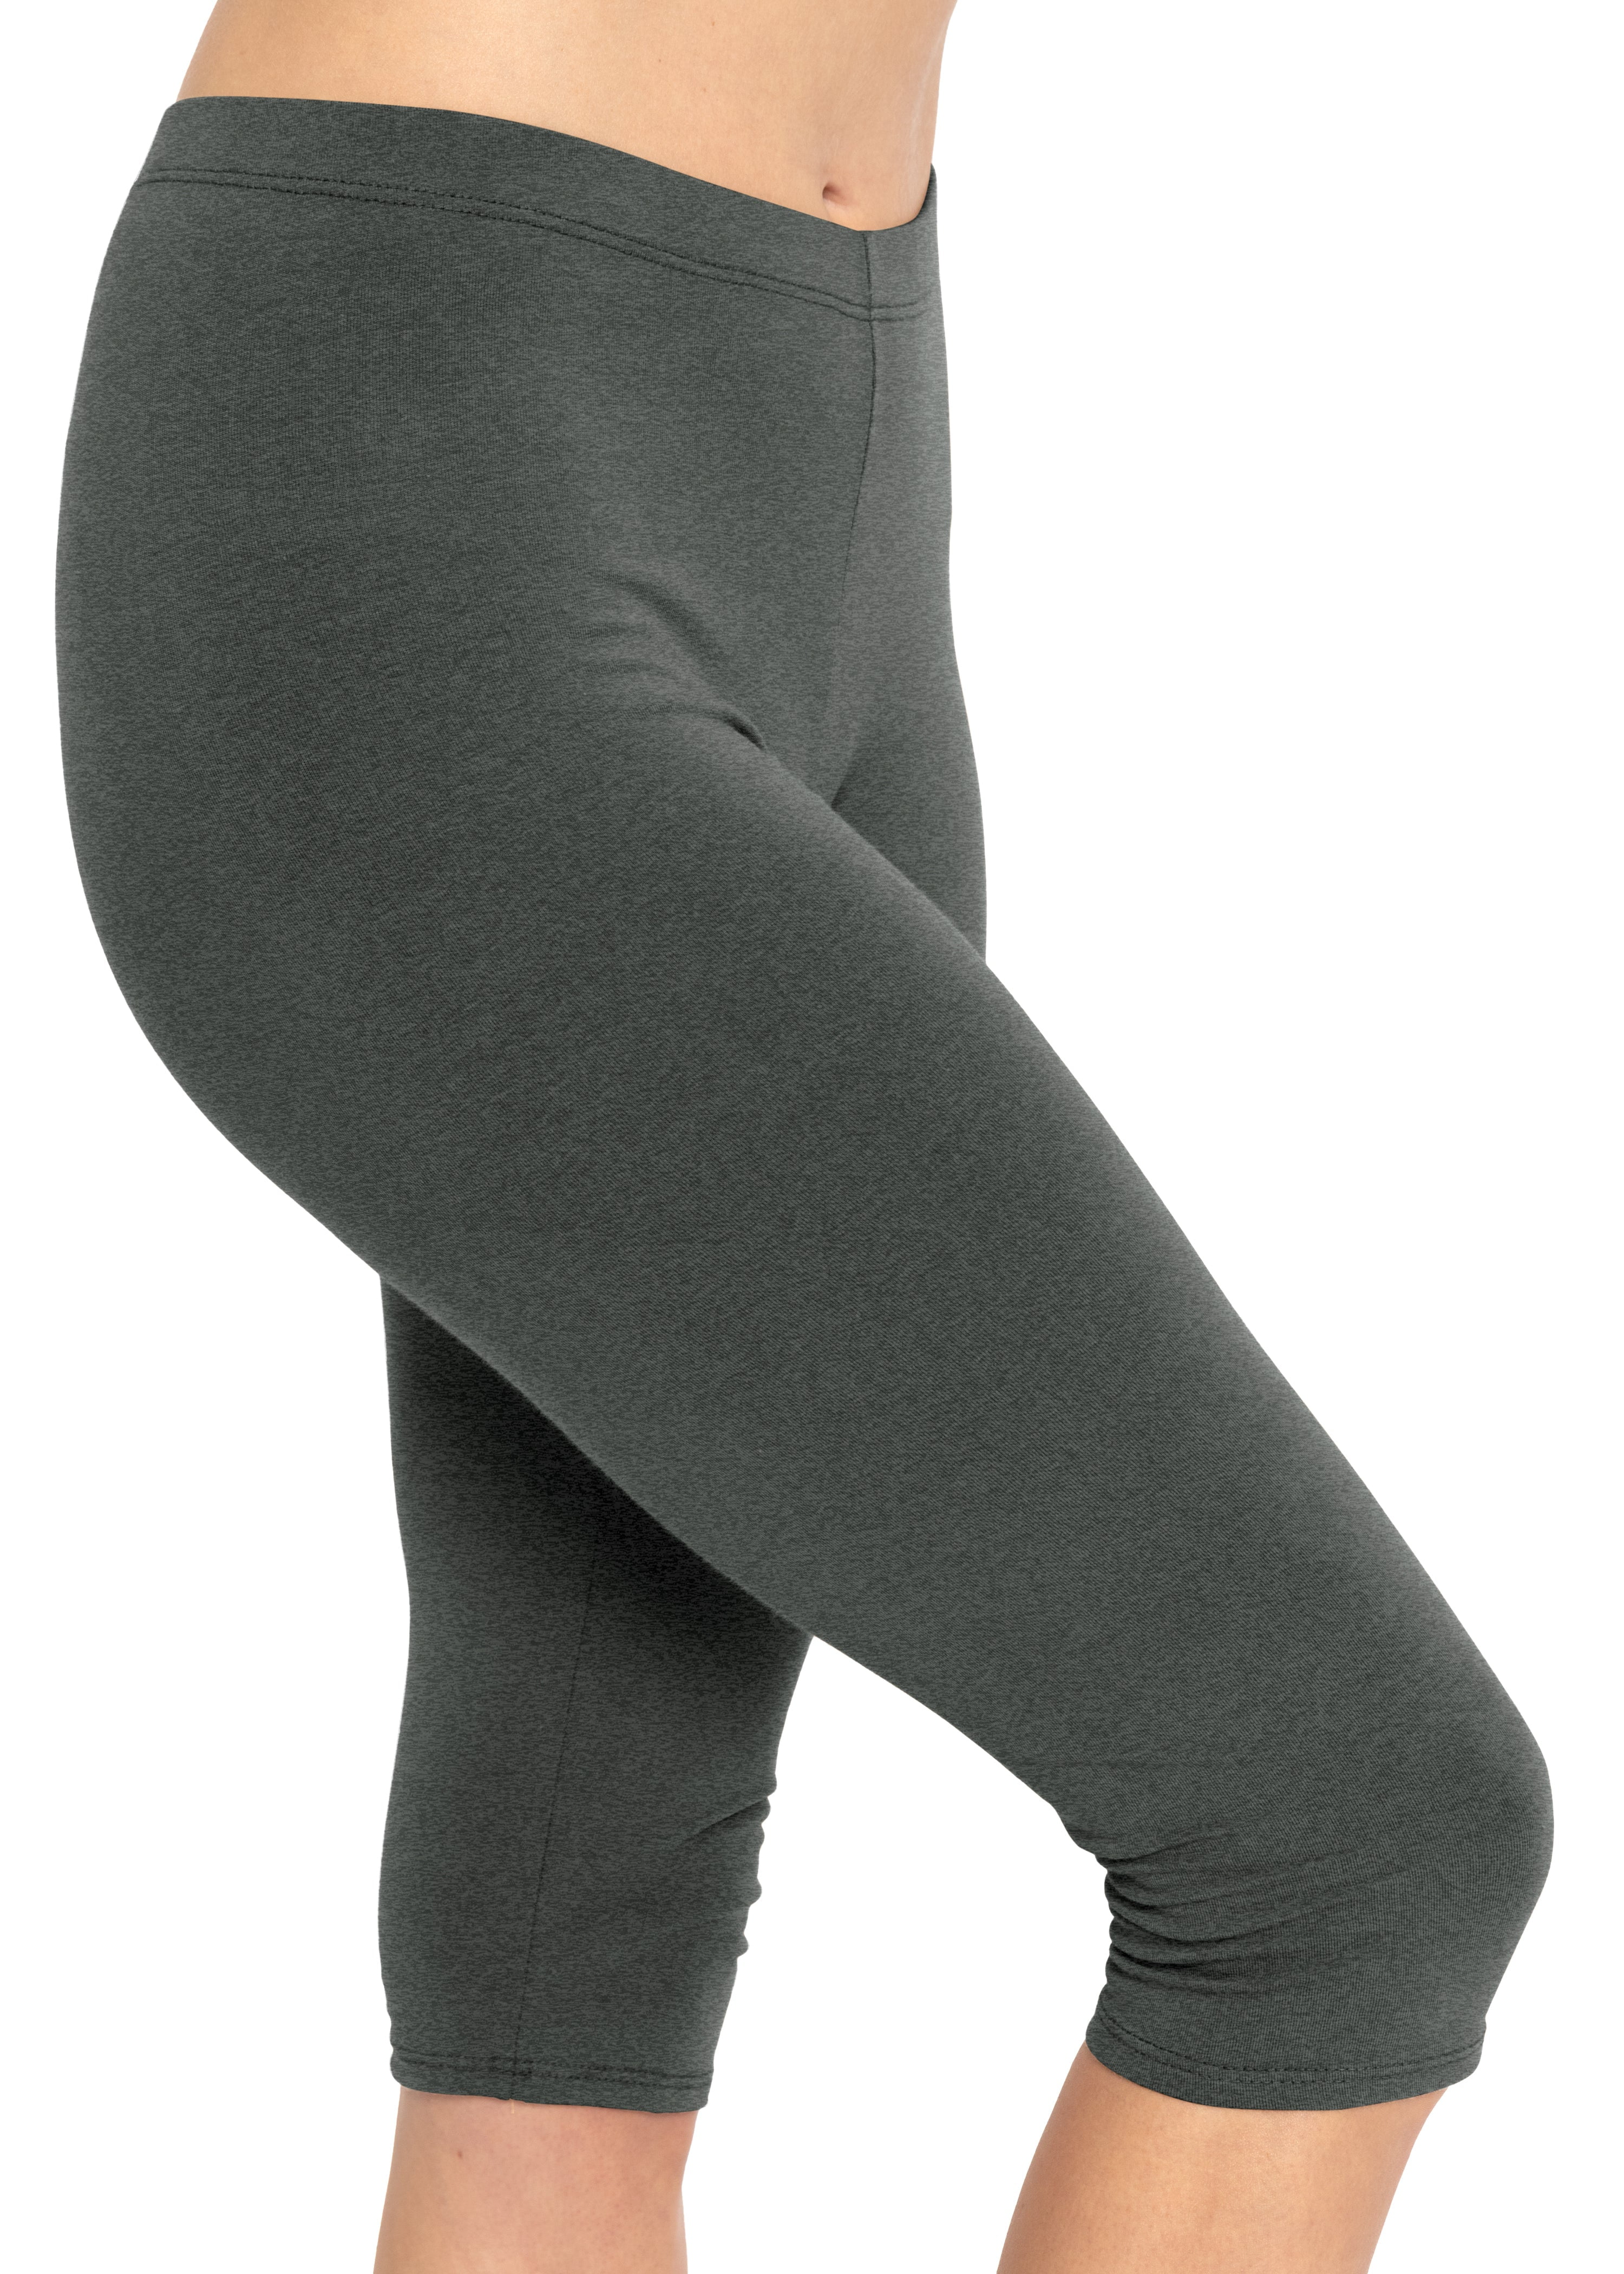 Stretch Is Comfort Women's Foldover Full Length Cotton Legging